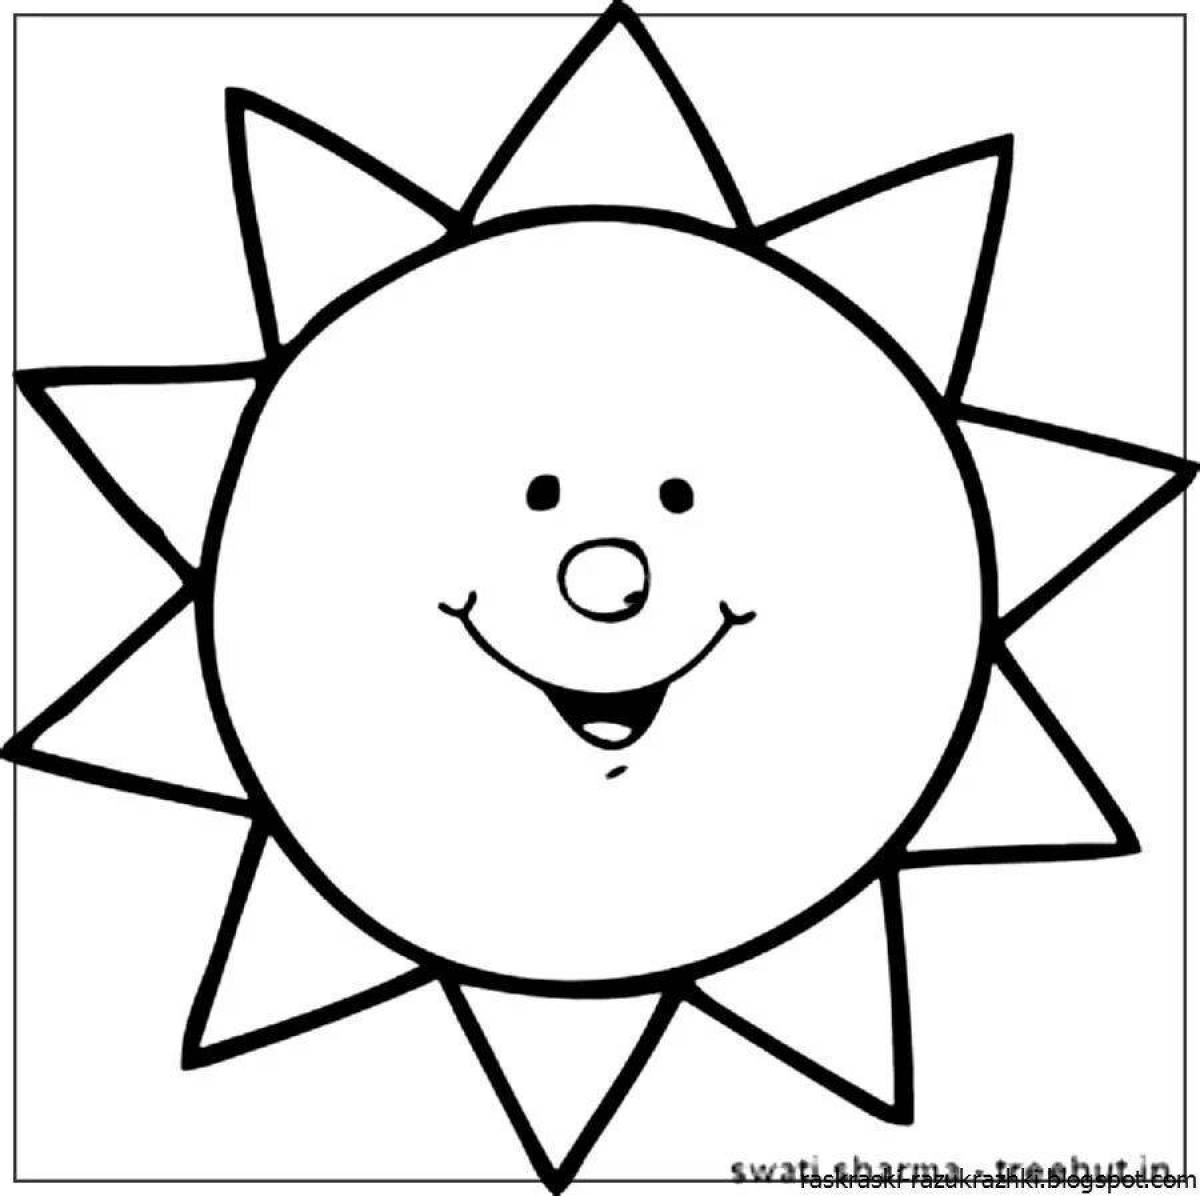 Милая раскраска солнце для детей 2-3 лет